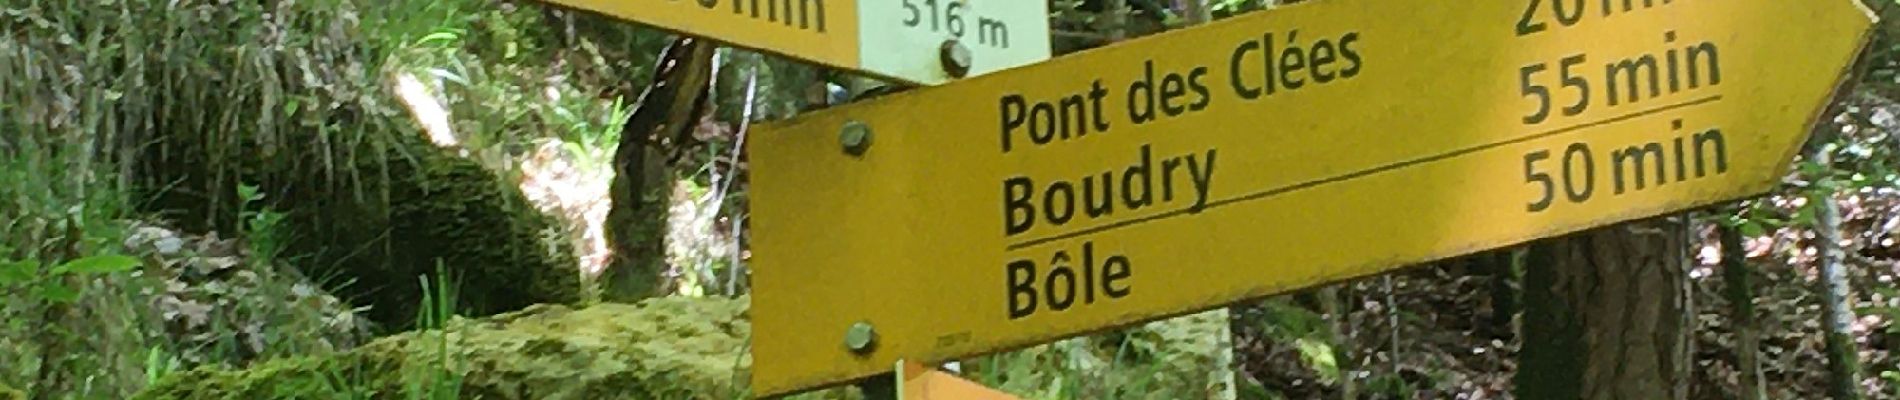 Tour Zu Fuß Boudry - Pont des Clées-Forêt de Boudry - Photo